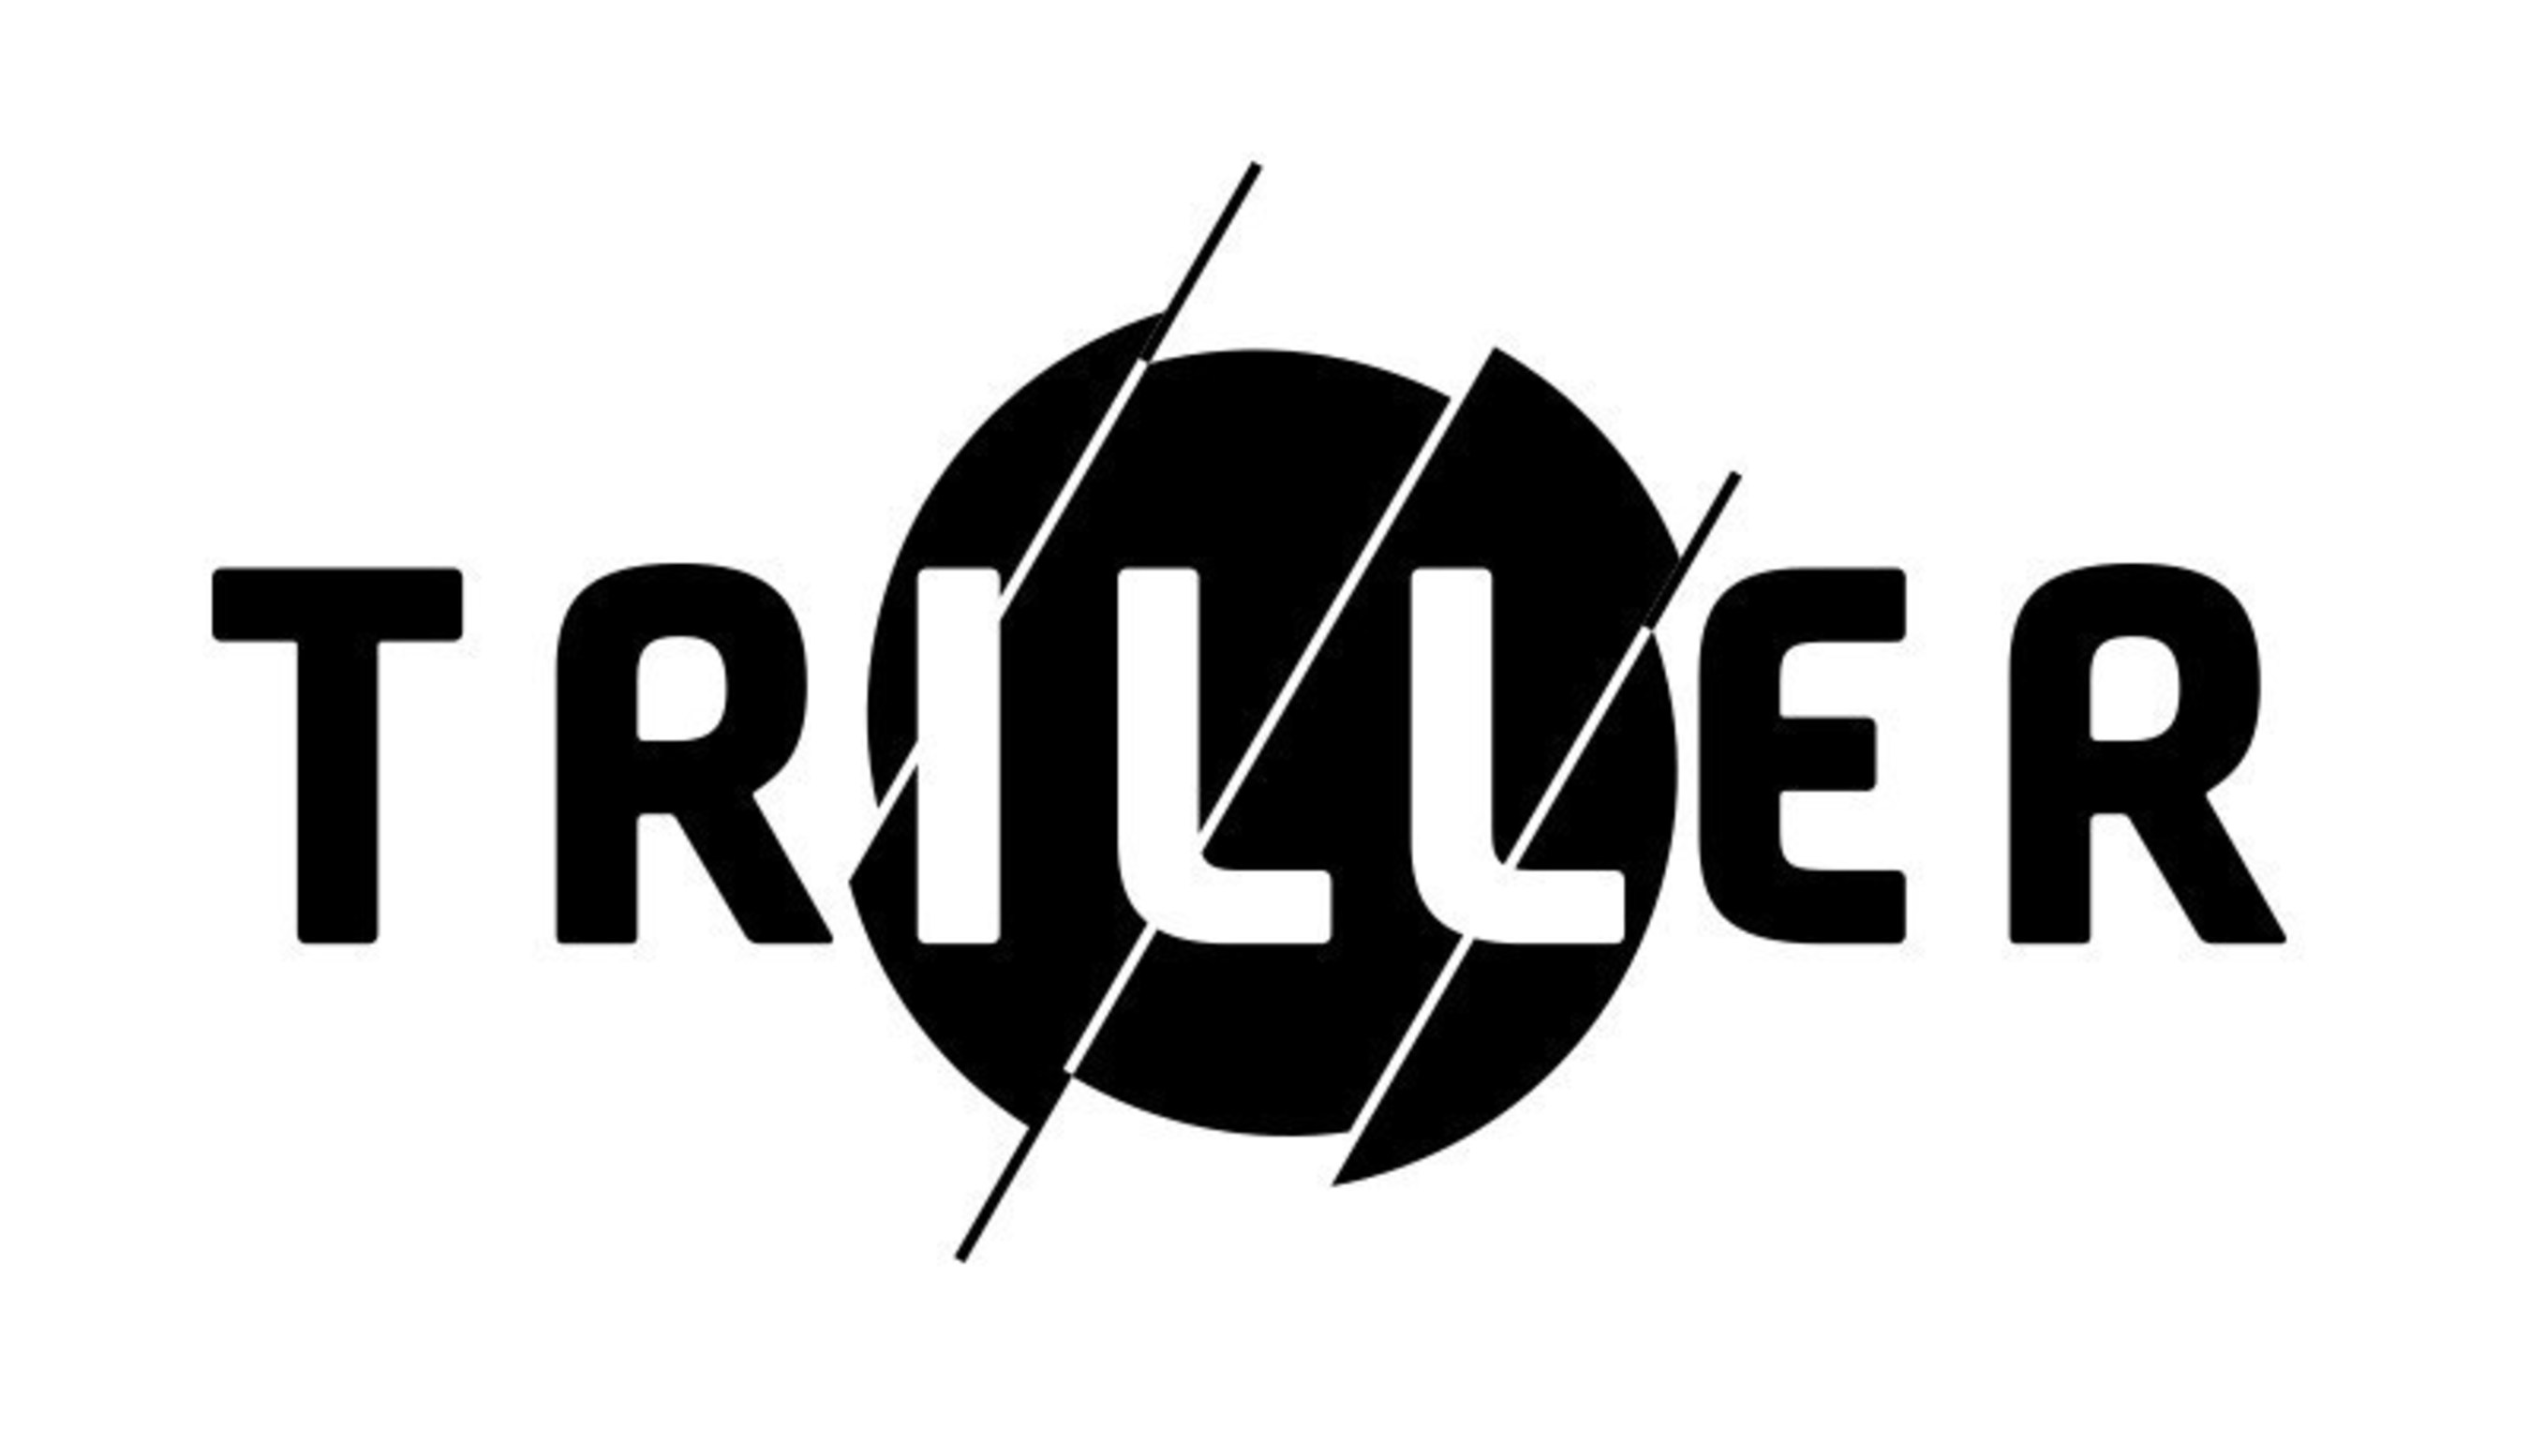 Triller logo